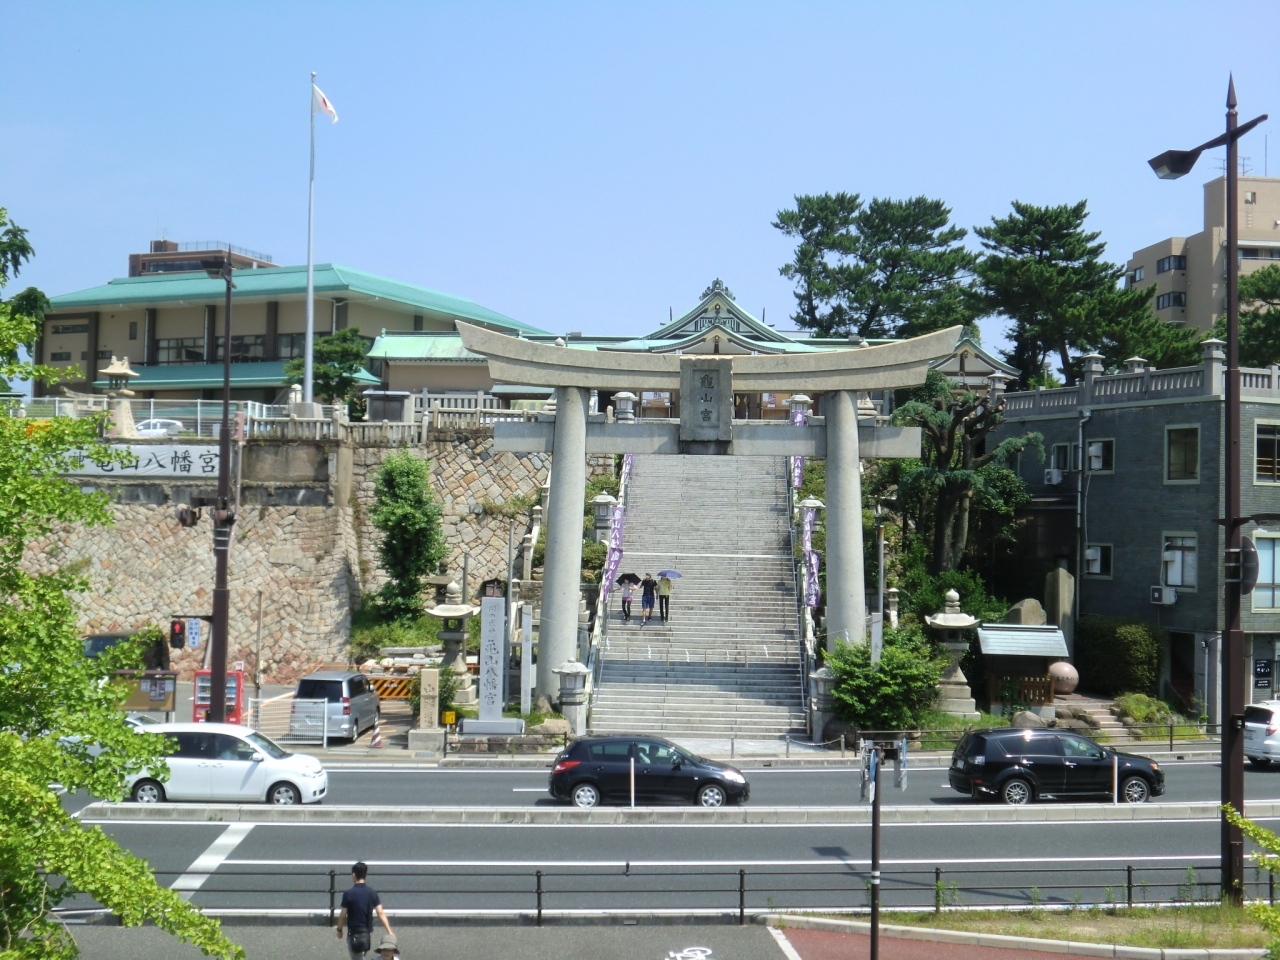 道路を挟んで、亀山八幡宮が鎮座しています。